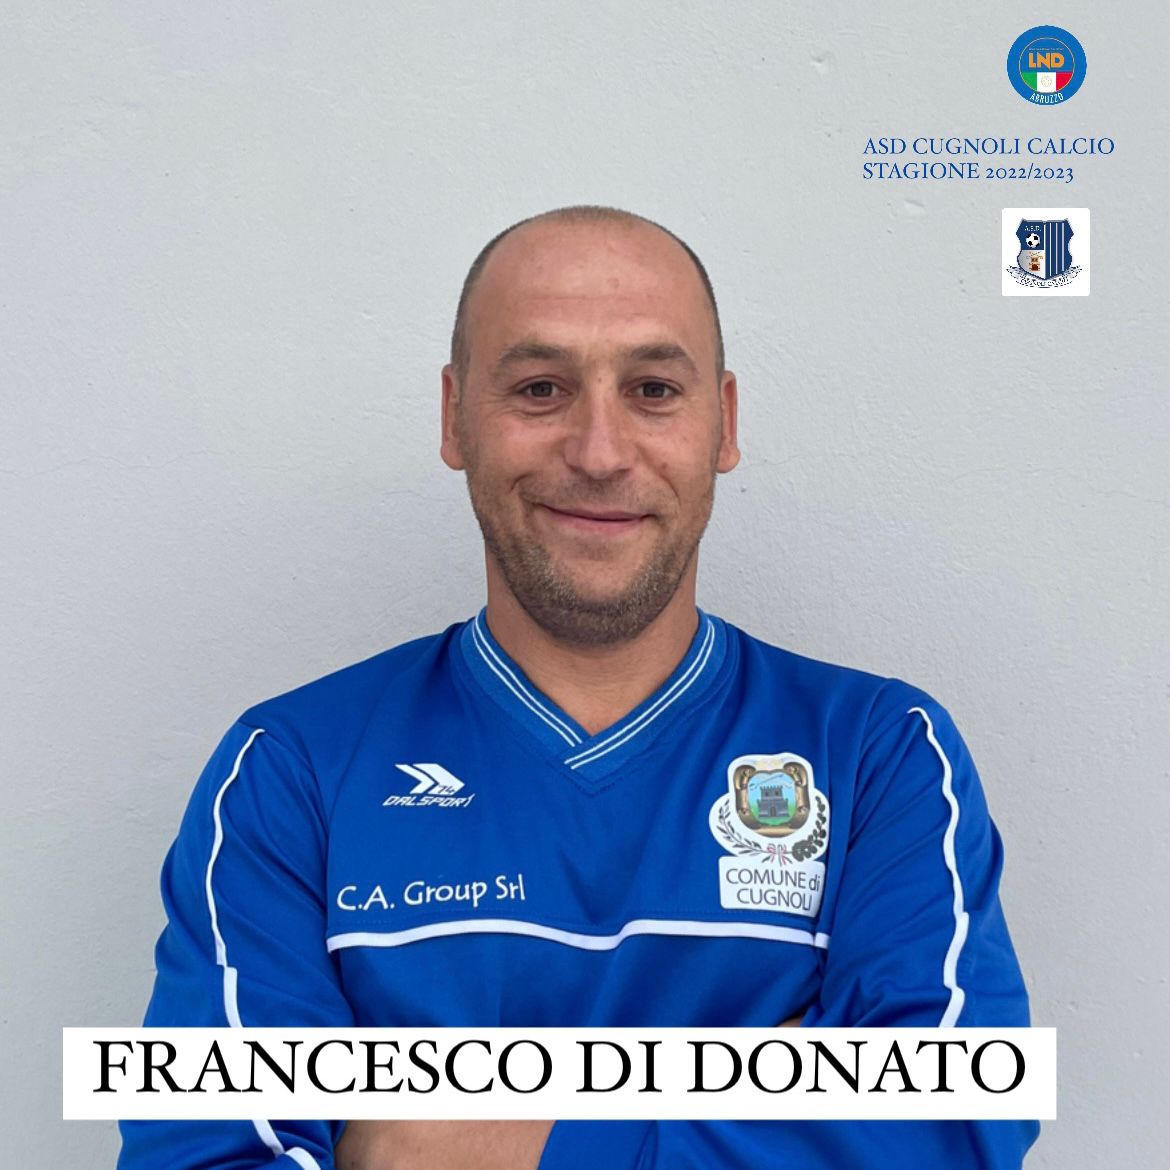 Francesco Di Donato